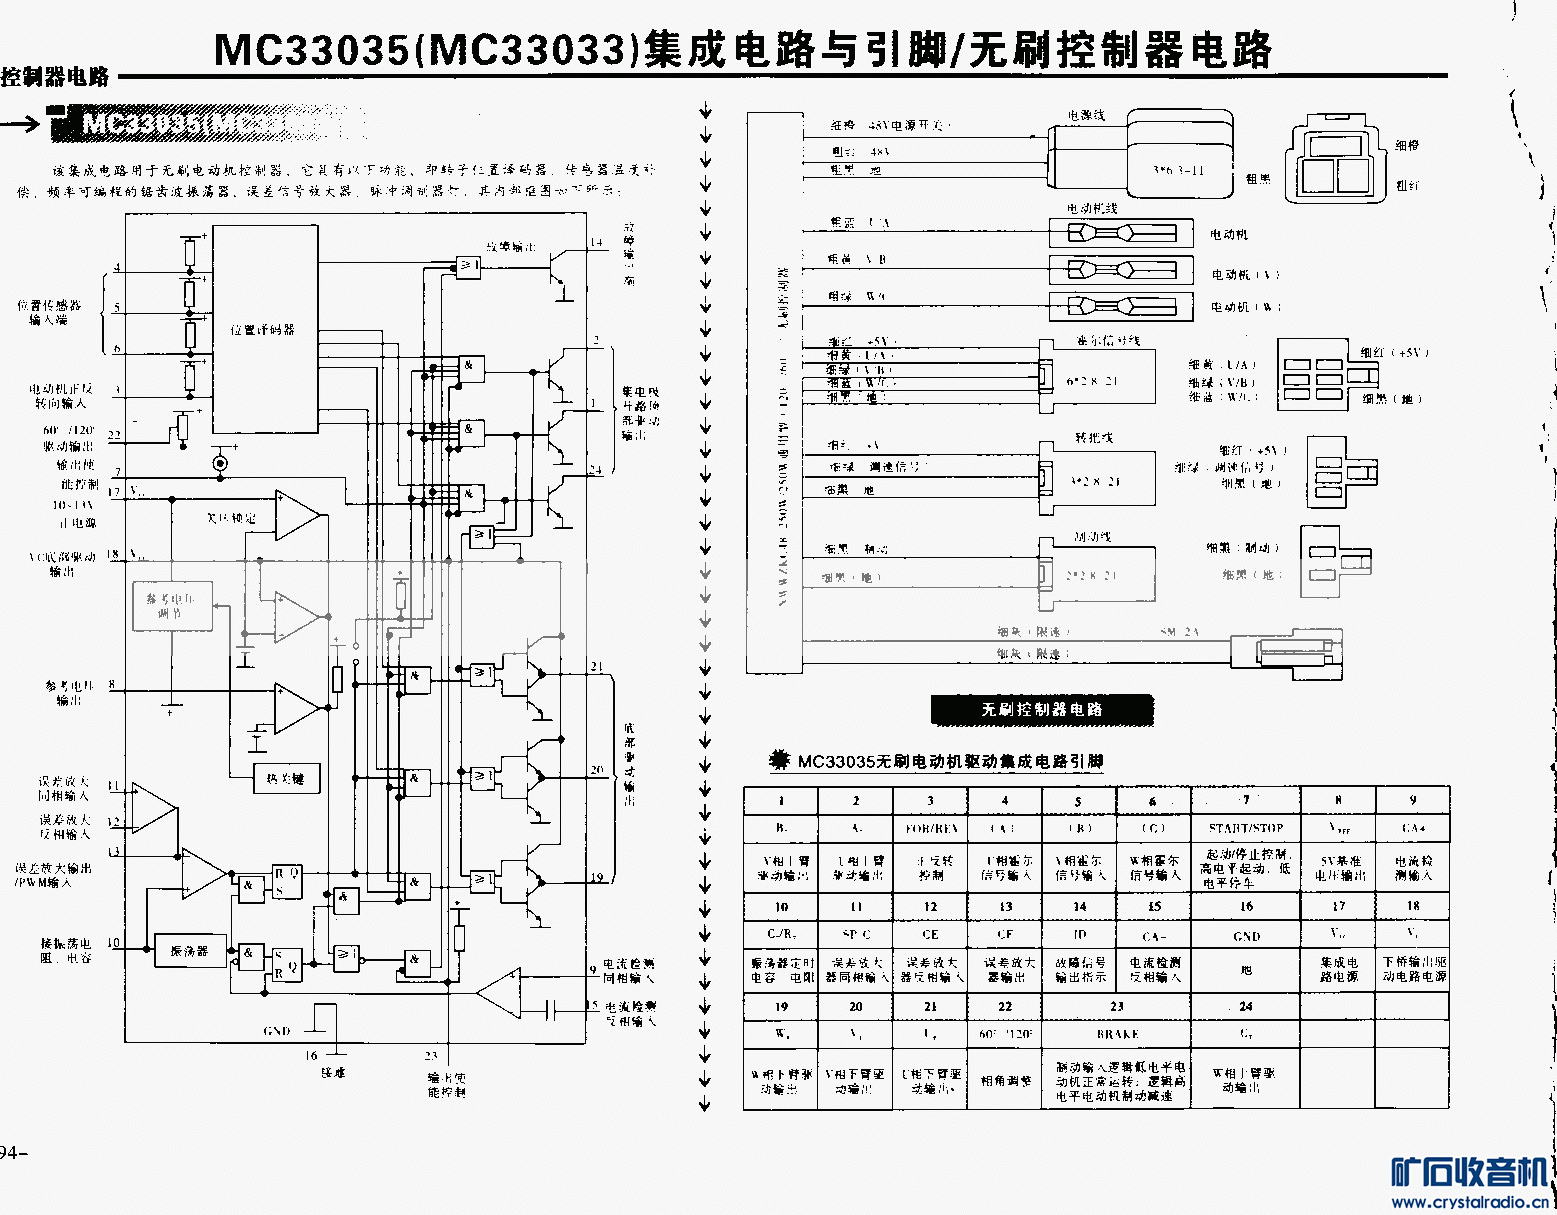 MC33035(MC33033)ɵ·ţˢ·.gif